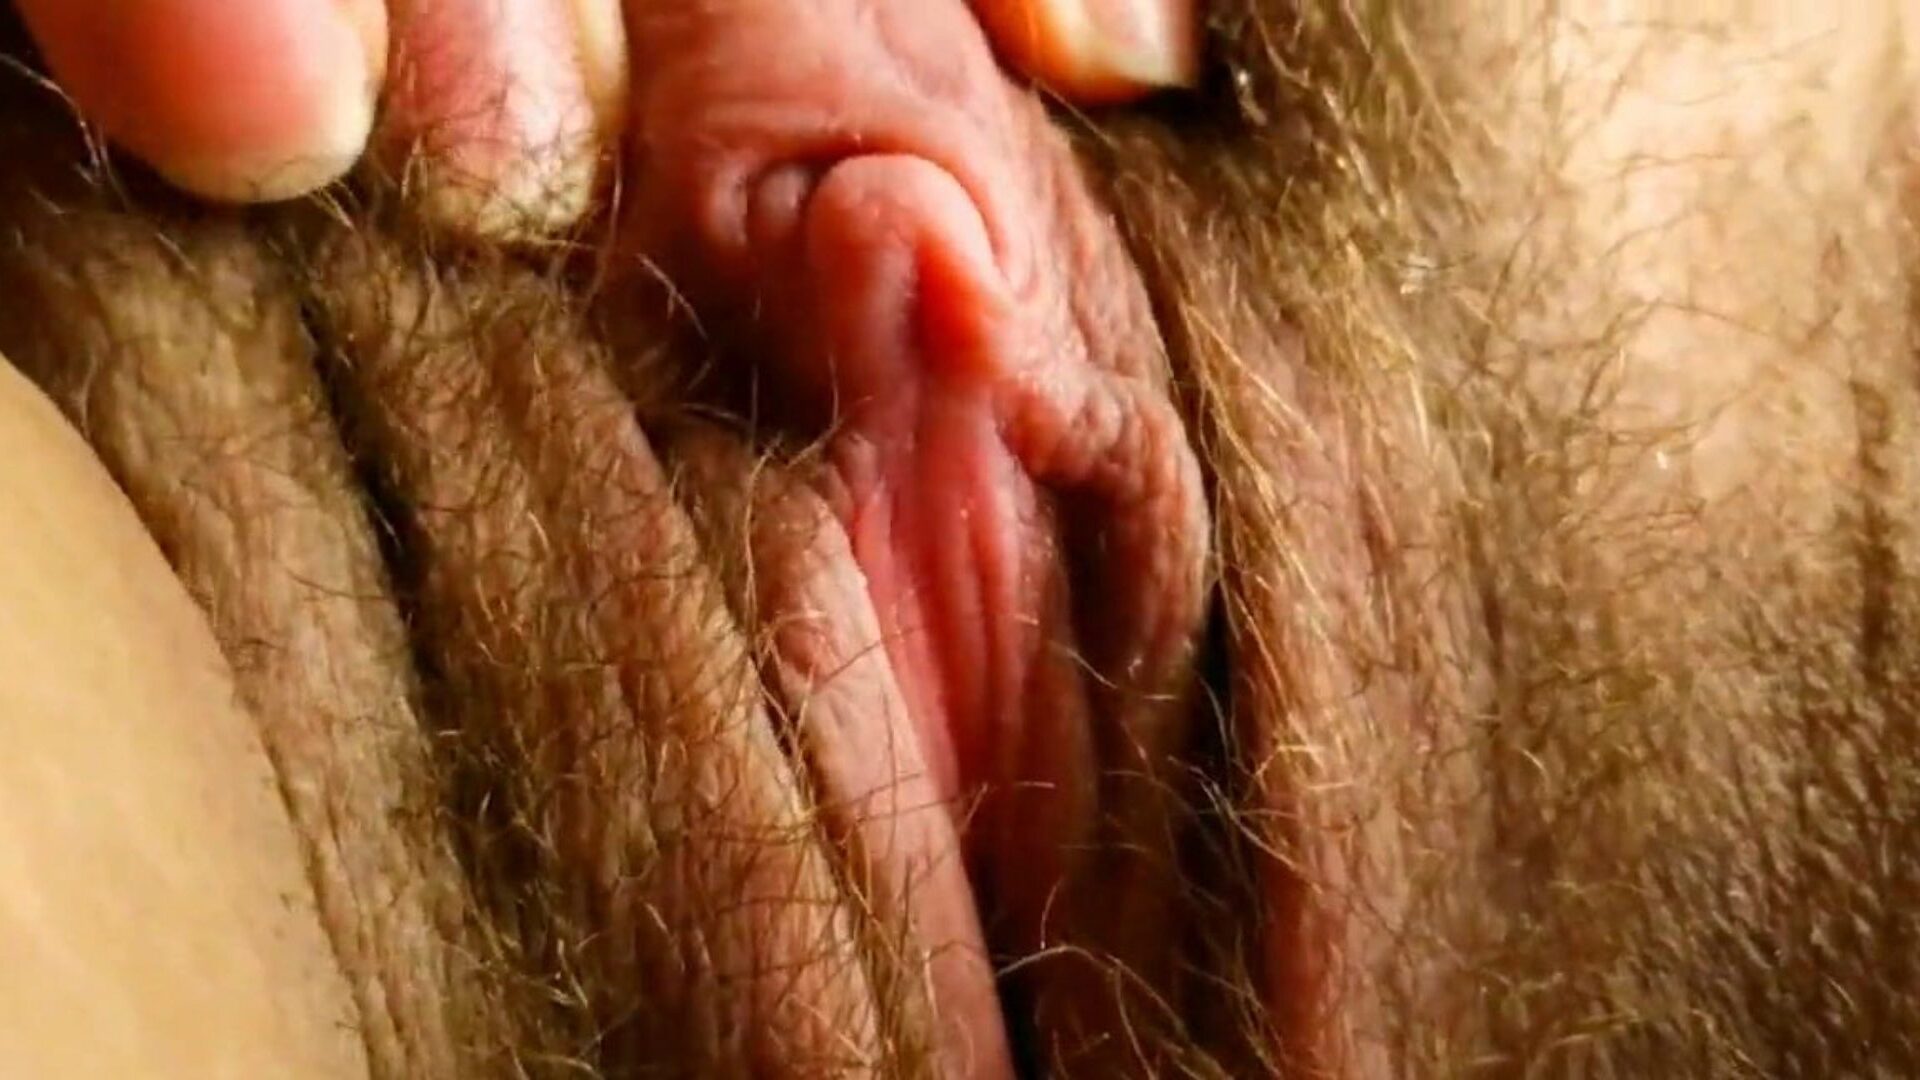 c'est le gros clitoris le plus sexy que vous ayez jamais vu: hd porn af watch c'est le gros clitoris le plus sexy que vous ayez jamais vu clip sur xhamster - la collection ultime de vidéos pornographiques pornographiques hard-core brazilian free-for-all